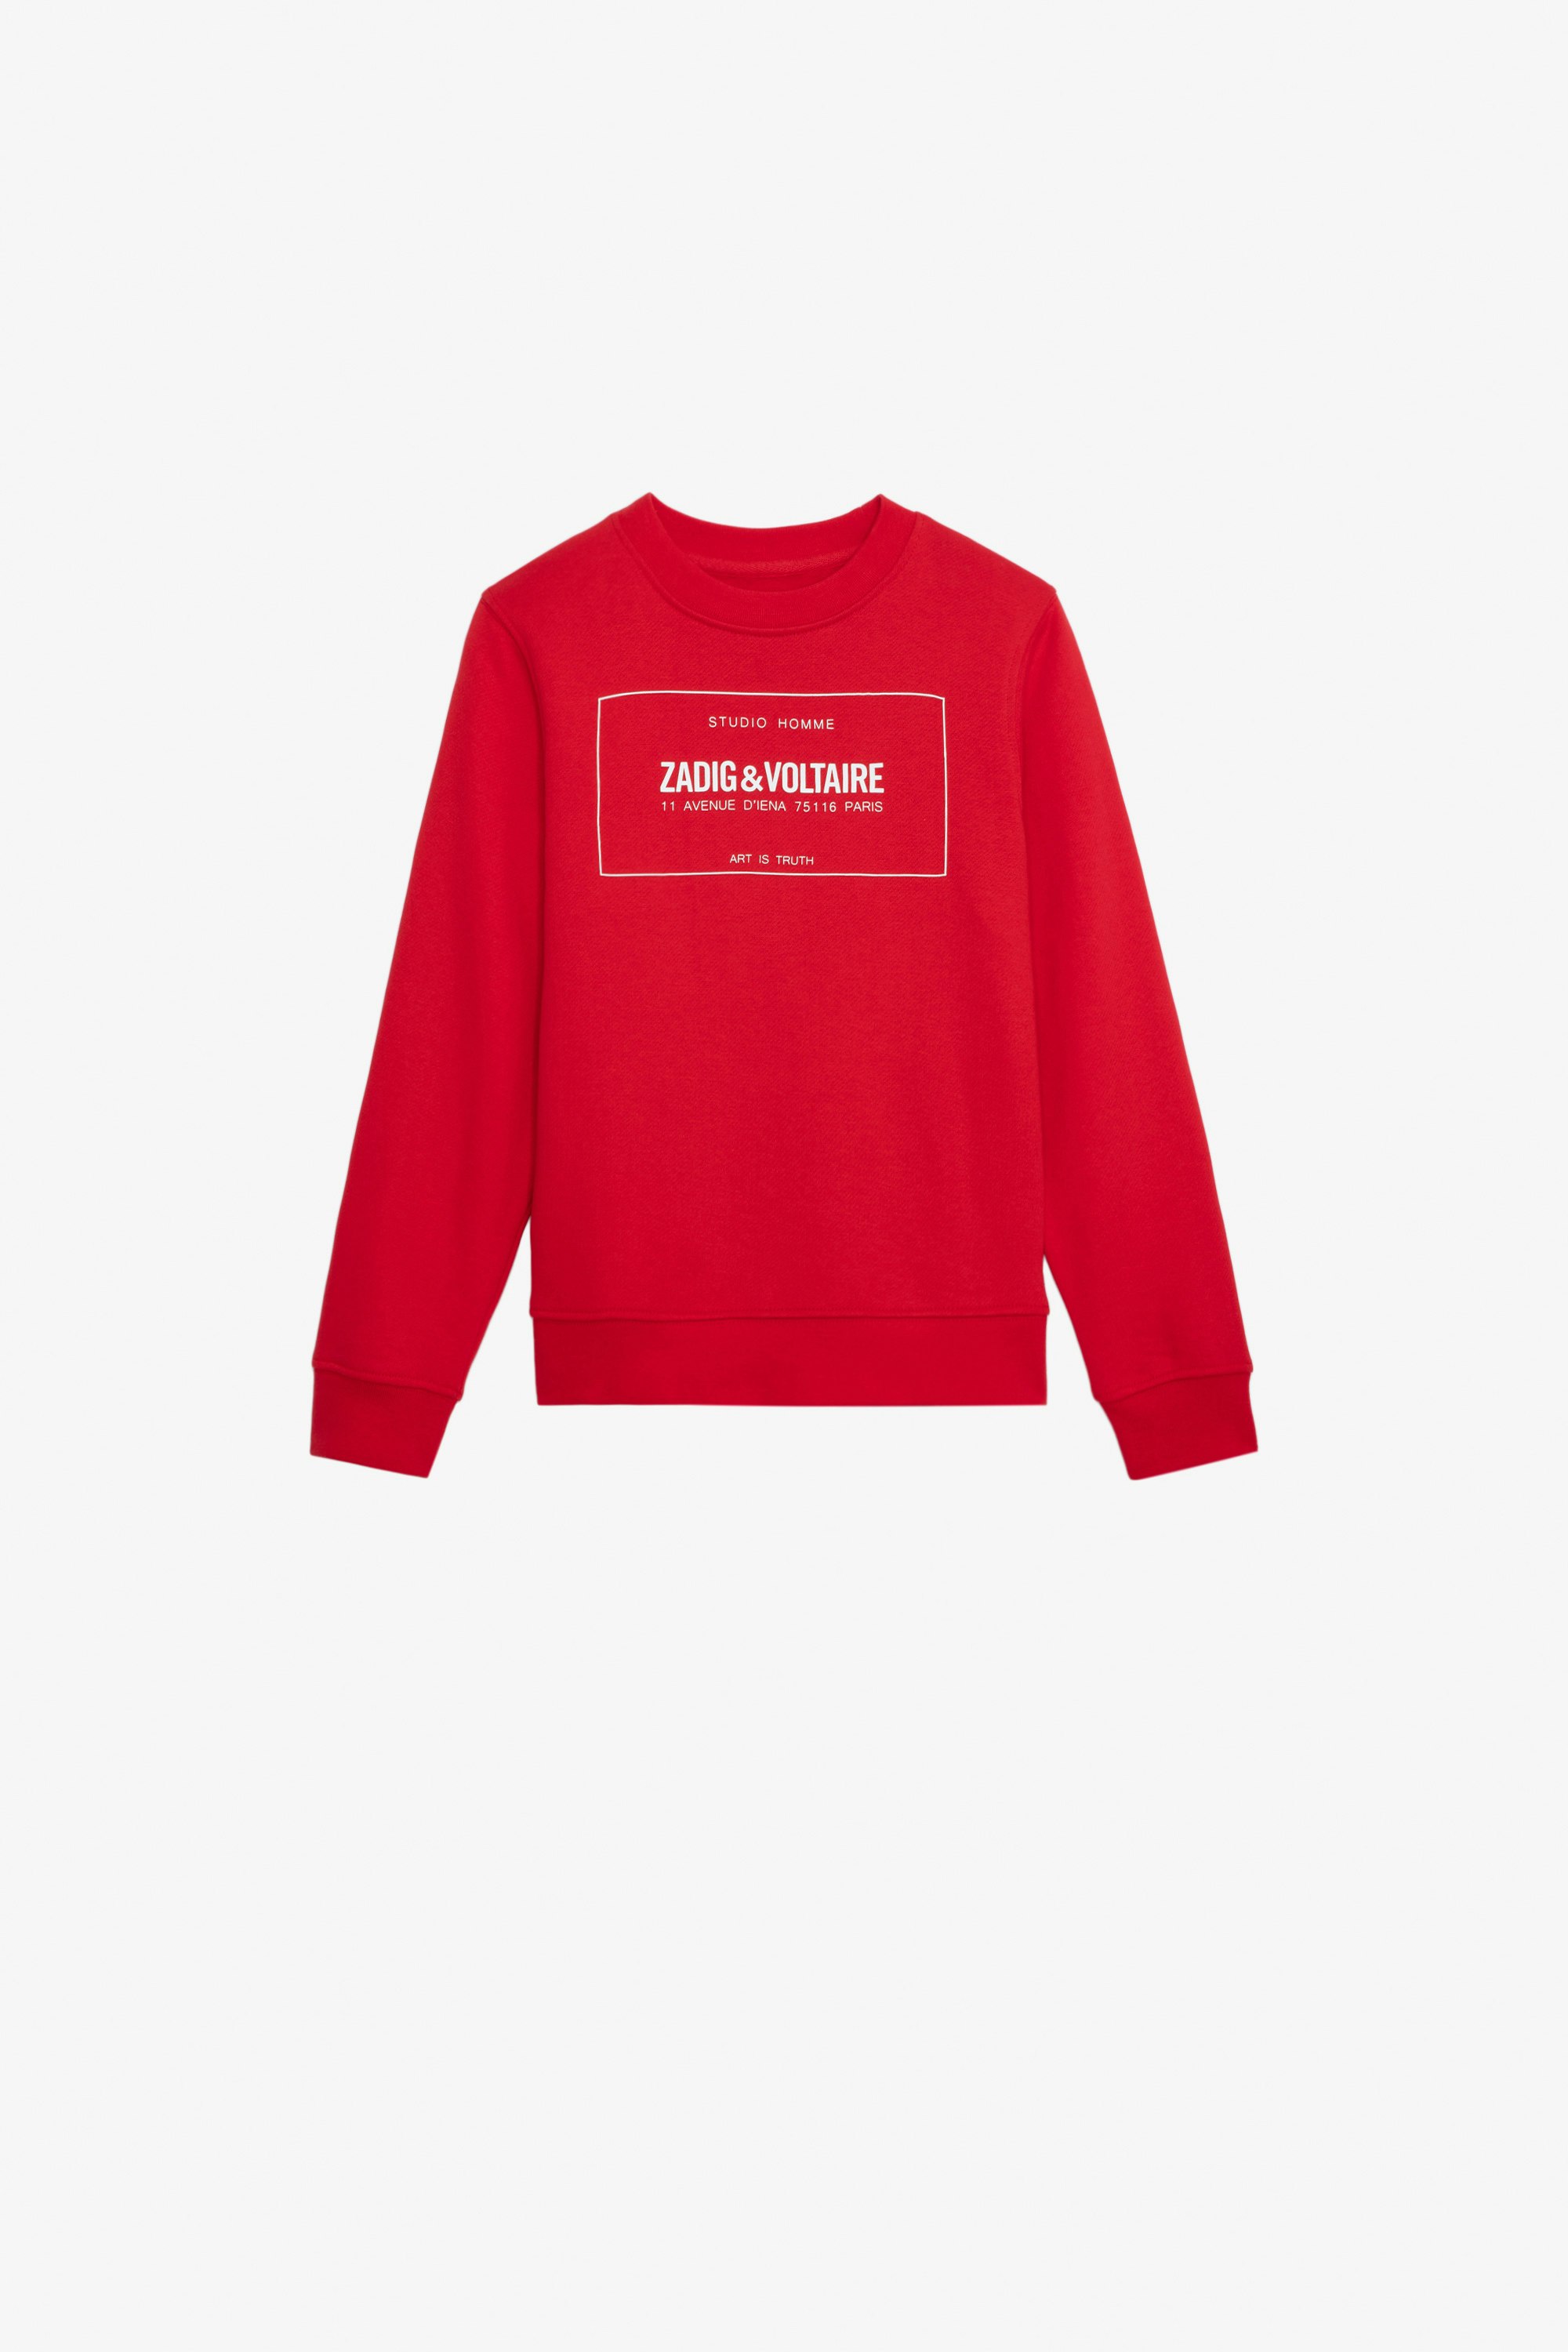 Simba Boys’ Sweatshirt - Boys’ red cotton fleece sweatshirt with insignia.